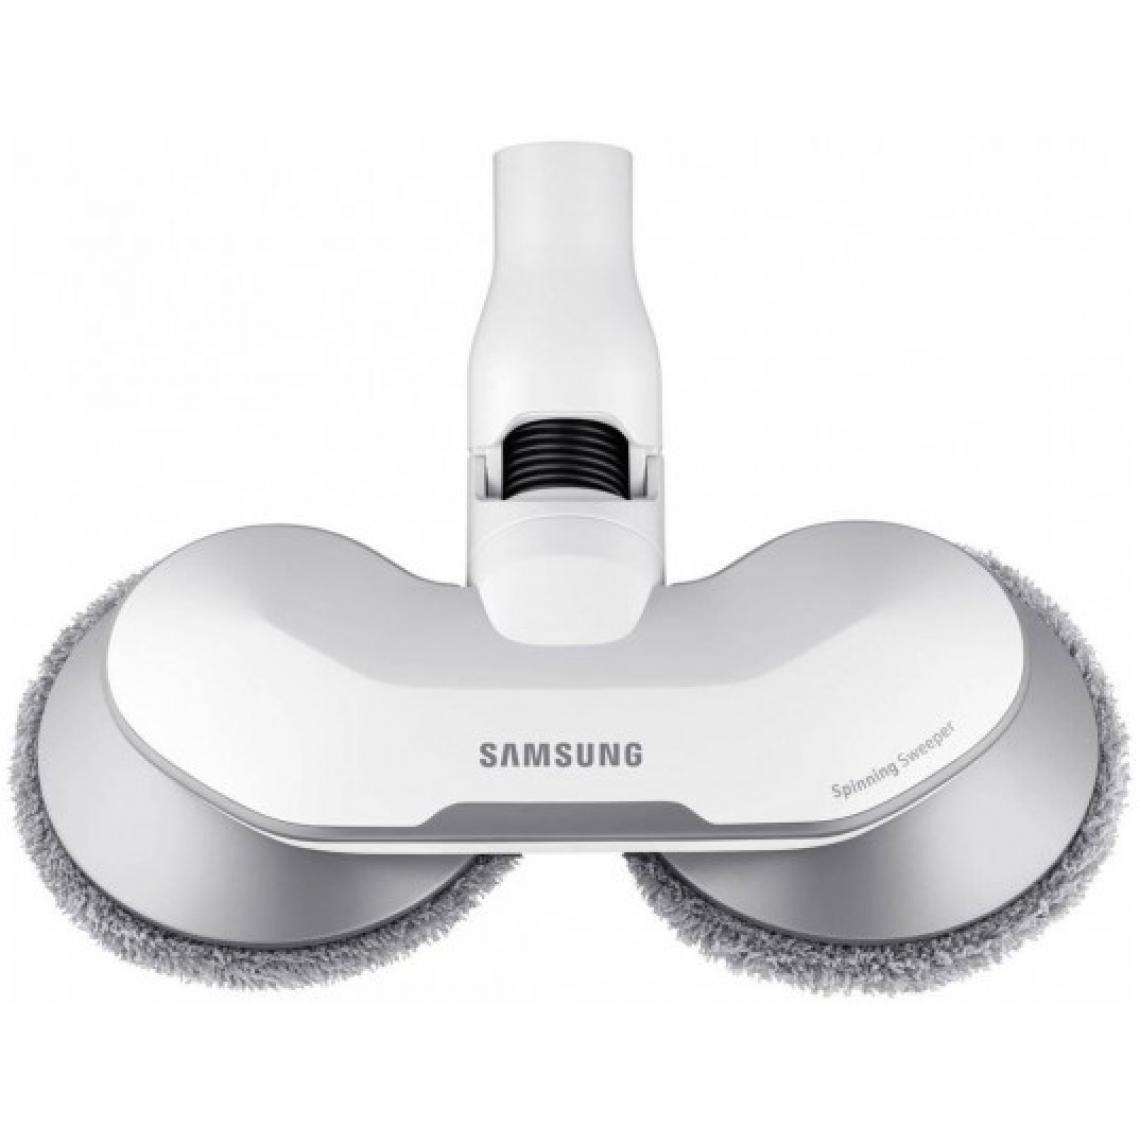 Samsung - Accessoire aspirateur VCA-WB650A double serpillère motorisée blanc - Accessoire entretien des sols